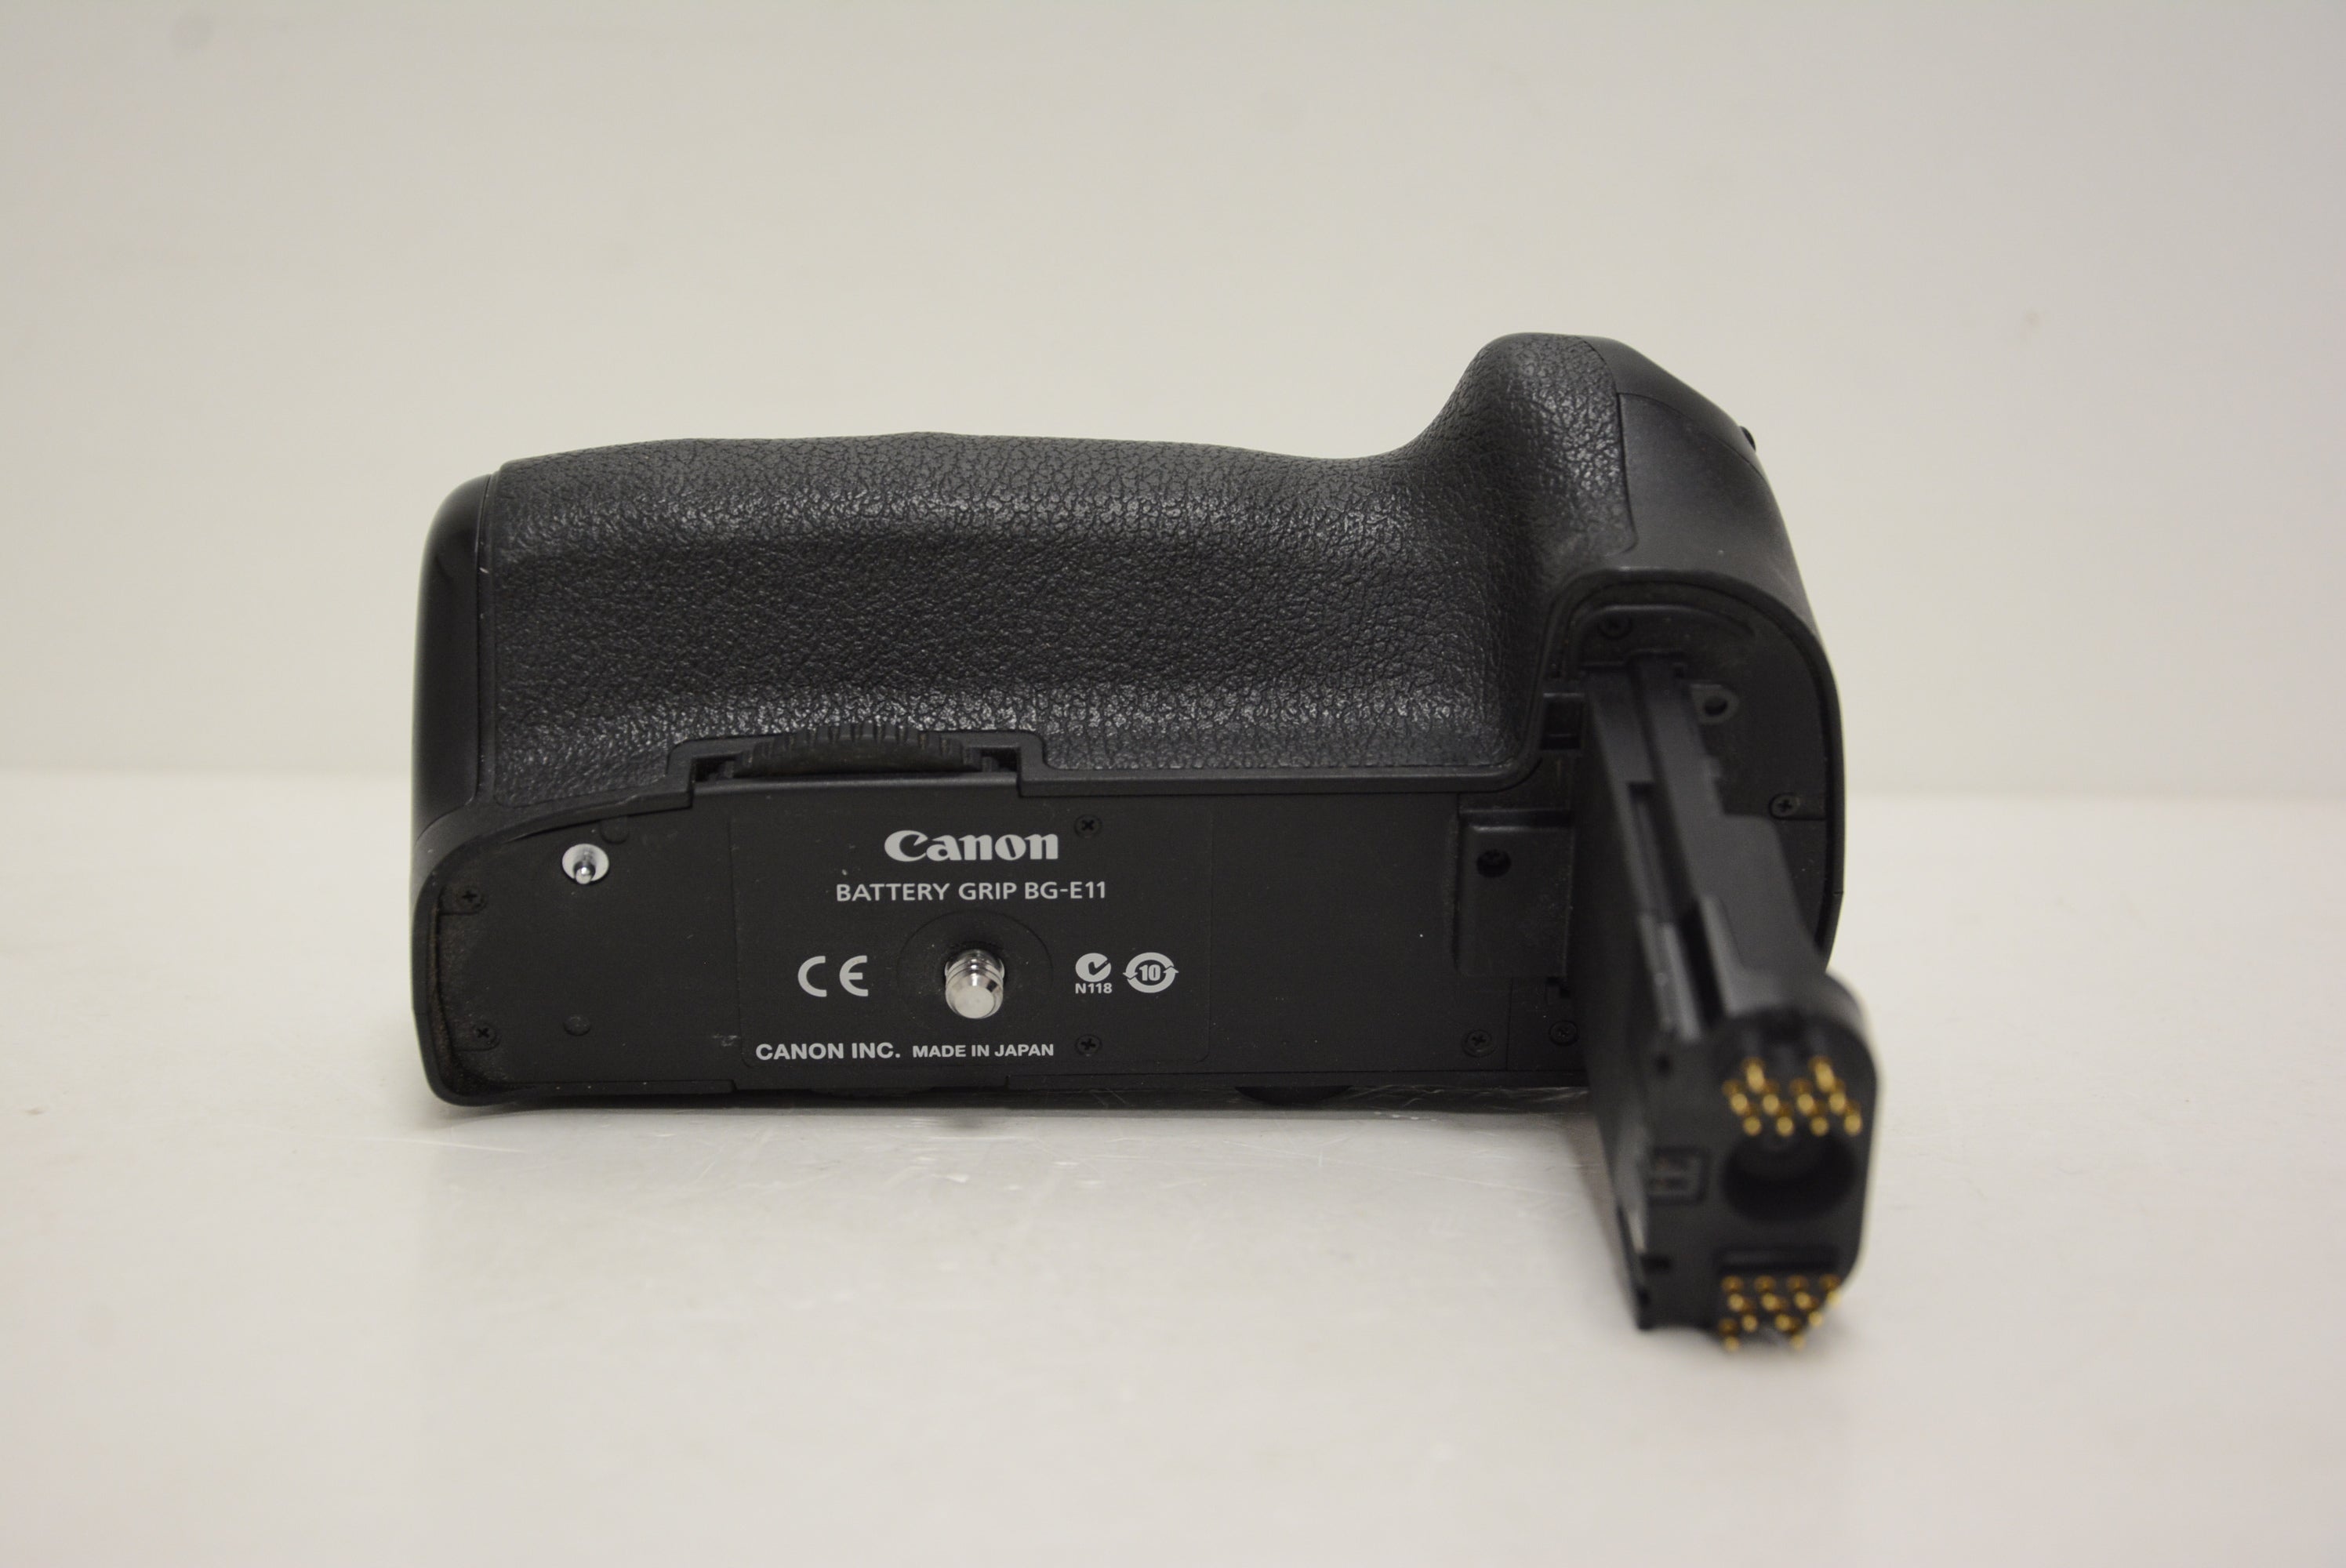 Battery Grip Canon BG-E11 usato - Gar. 1 anno